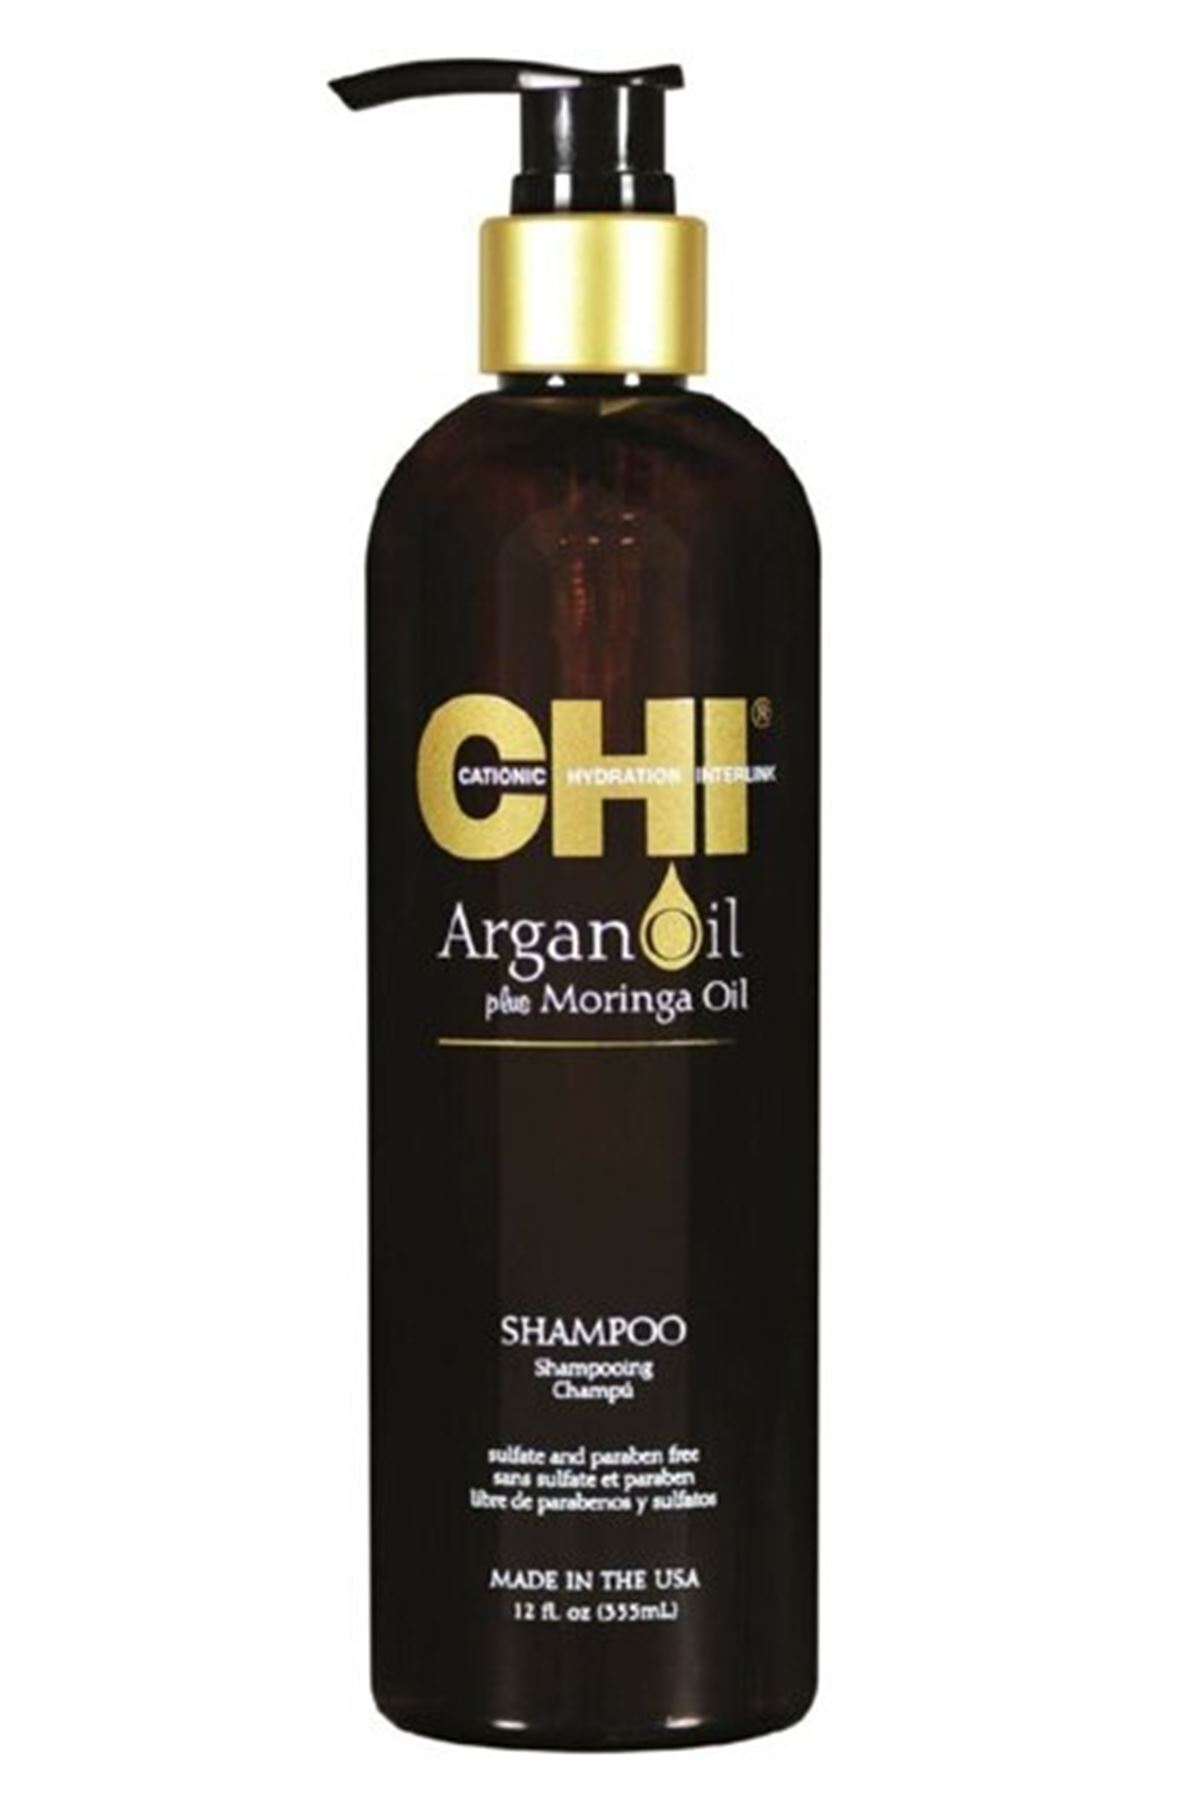 CHI Argan Plus Moringa Oil Sülfatsız Şampuan 355 ml